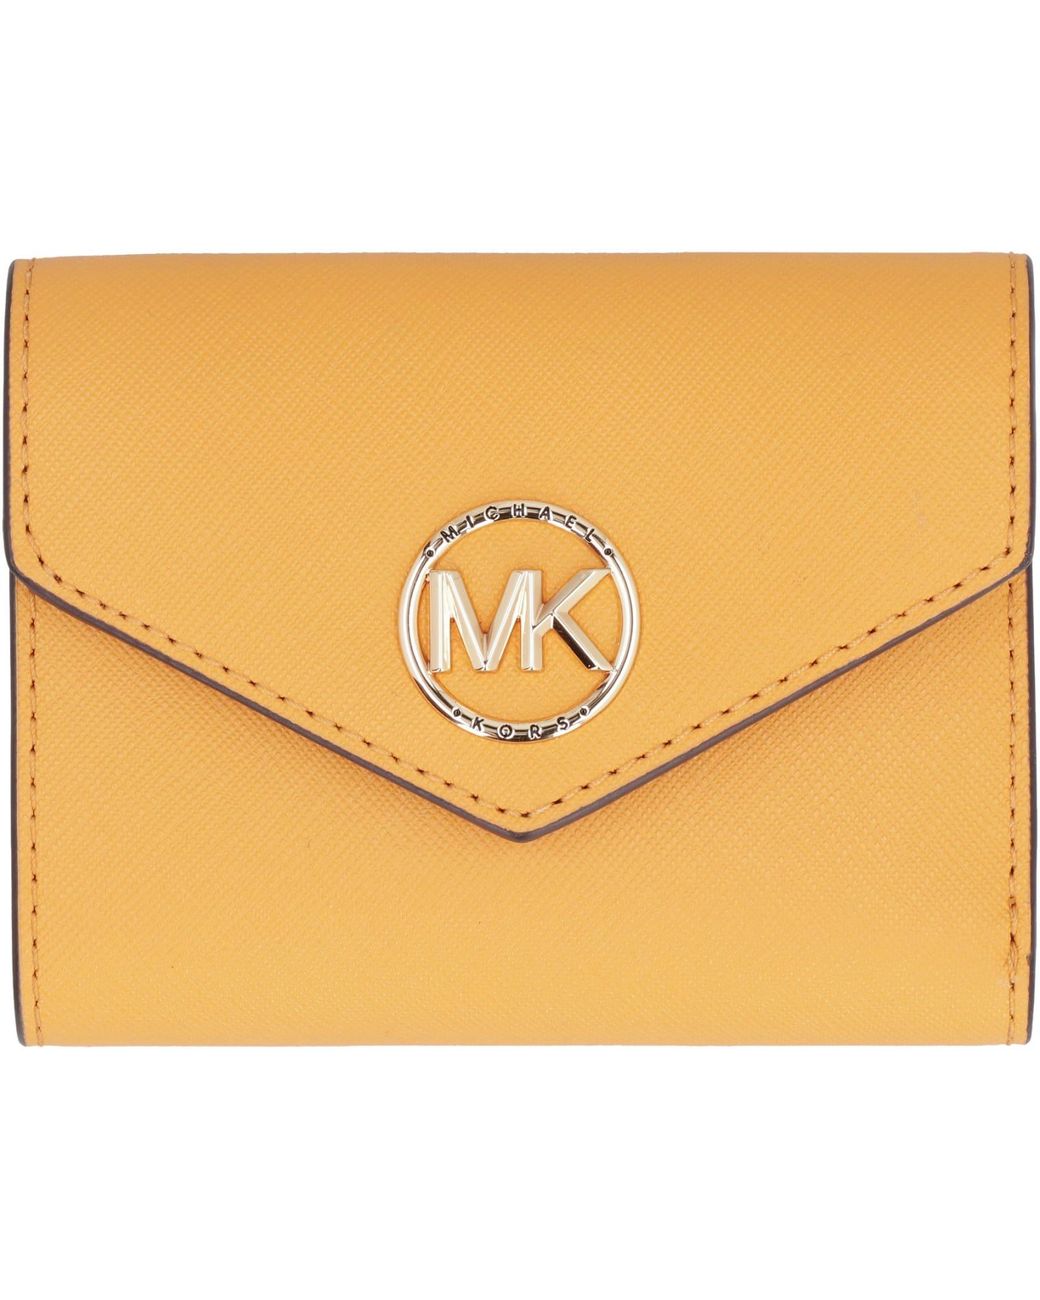 MICHAEL MICHAEL KORS, Orange Women's Wallet